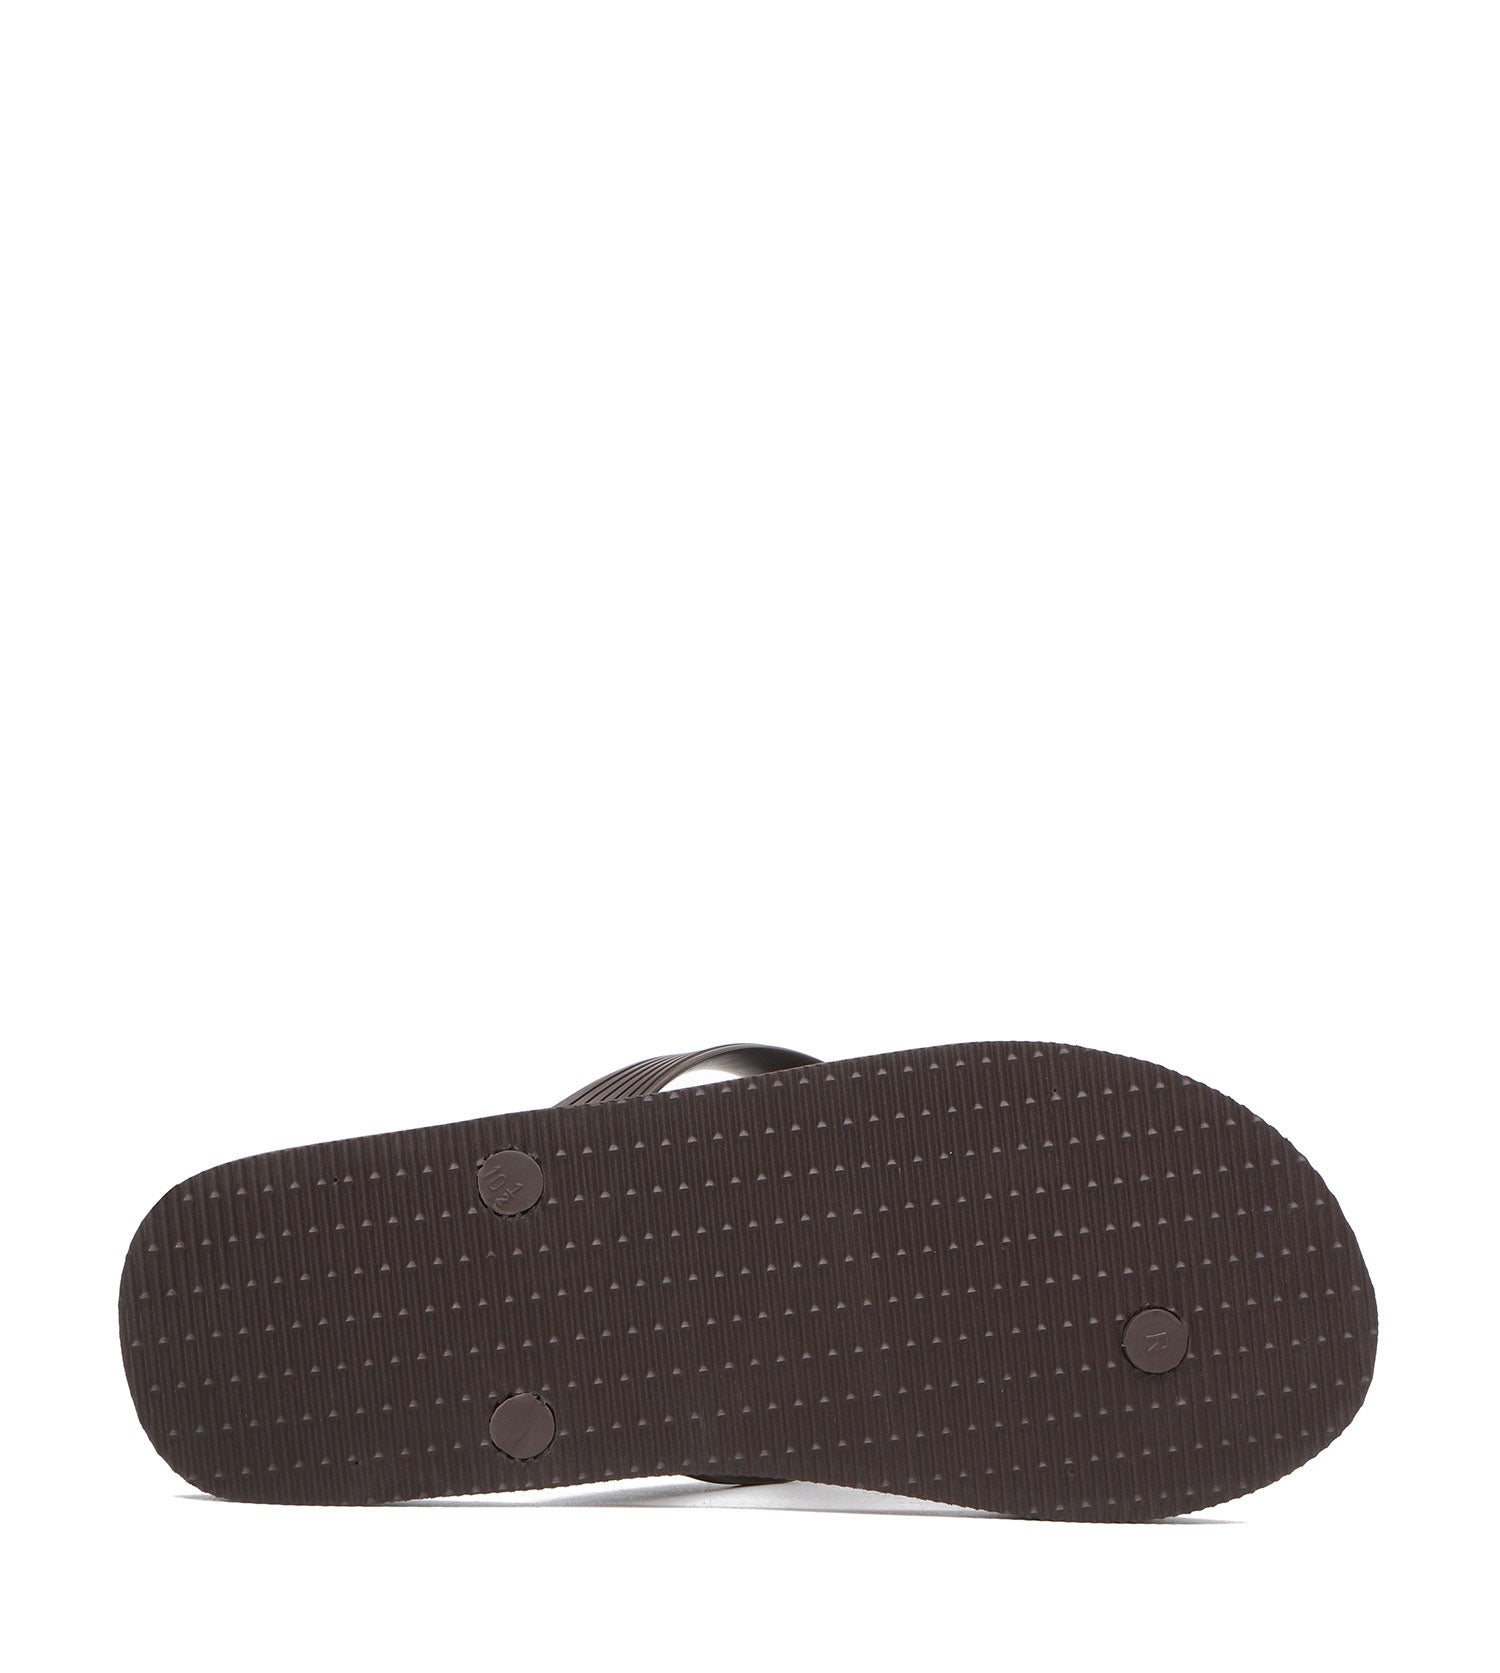 TARRAMARRA Flip Flops Thongs Traveller-Sandals-PEROZ Accessories